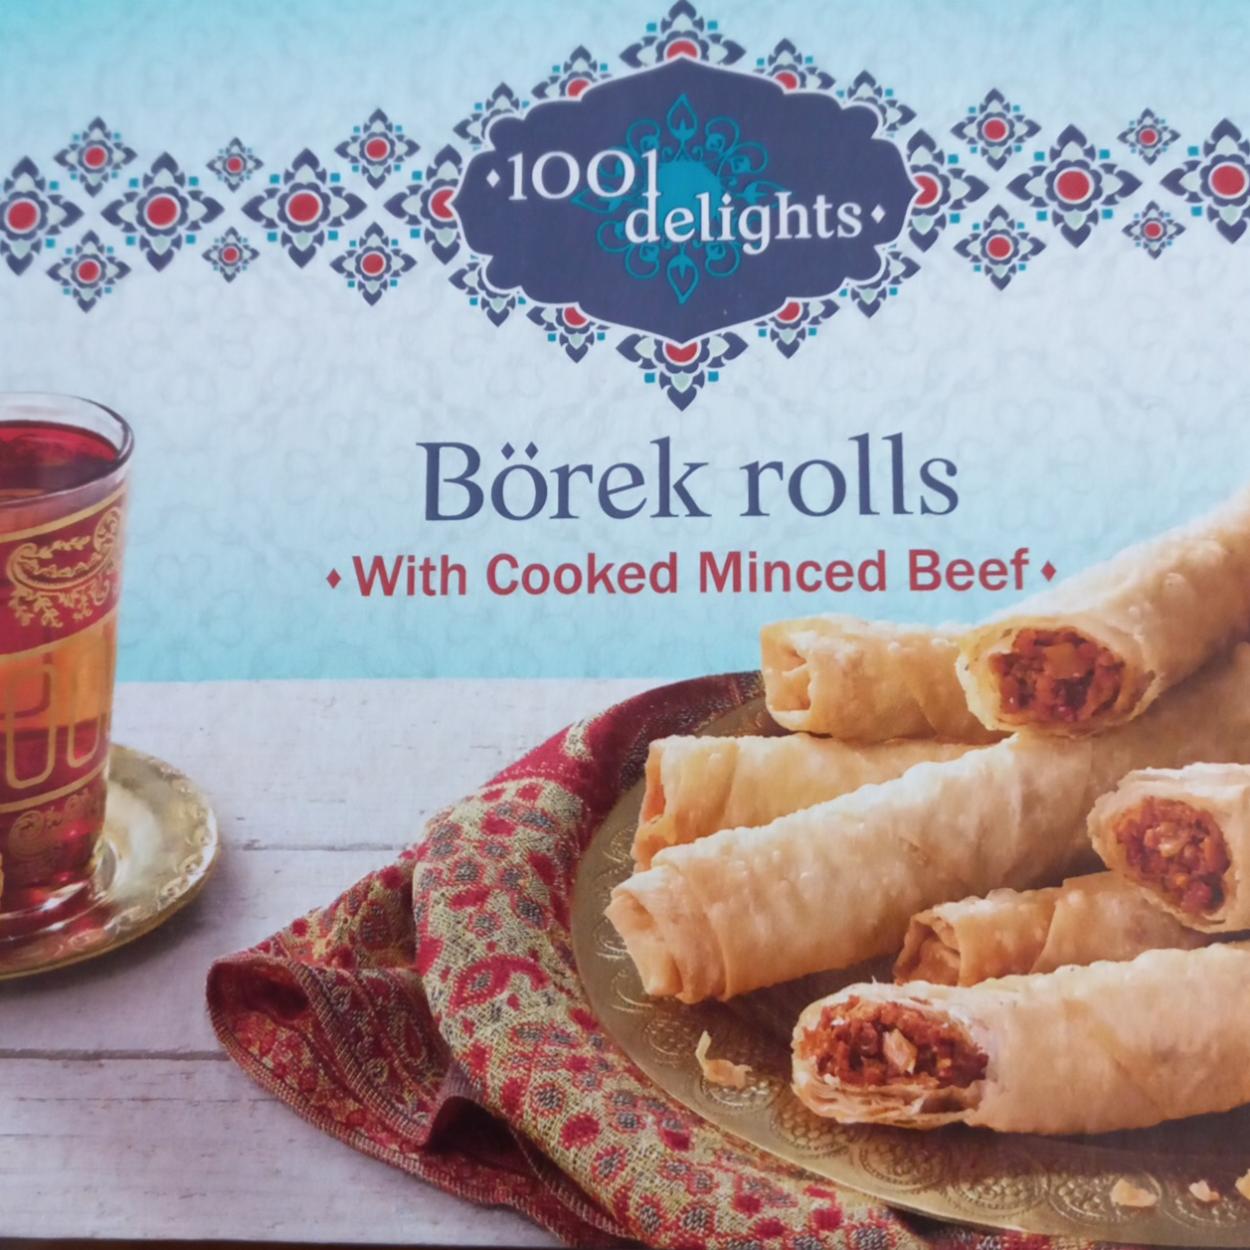 Fotografie - Börek rolls with Cooked Minced Beef 1001 delights